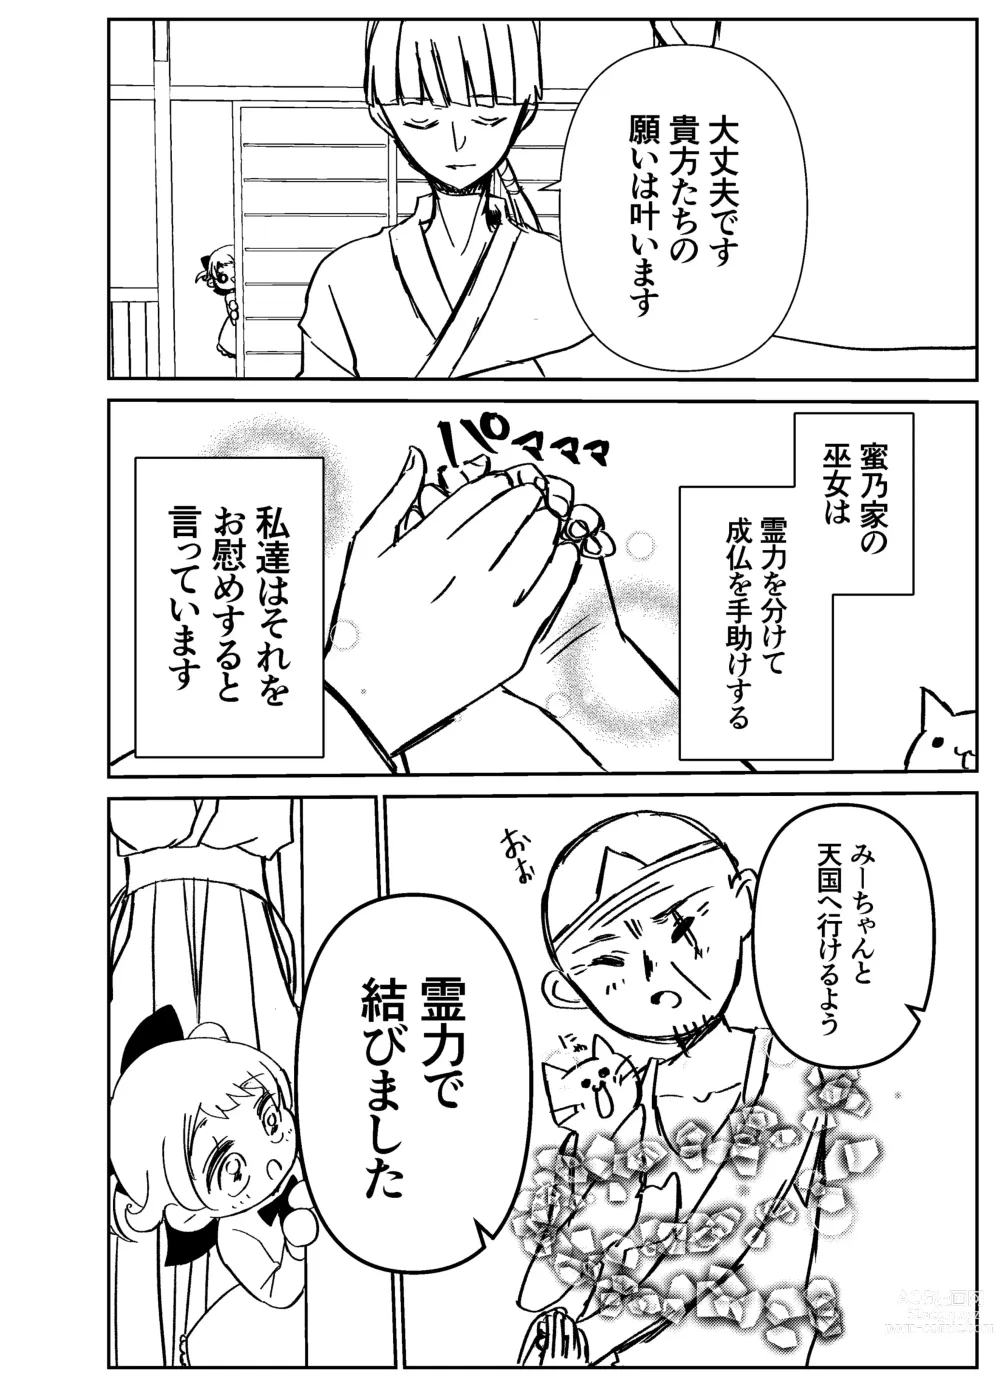 Page 5 of doujinshi Kando Komete o Nagusame Itashimasu Version 2